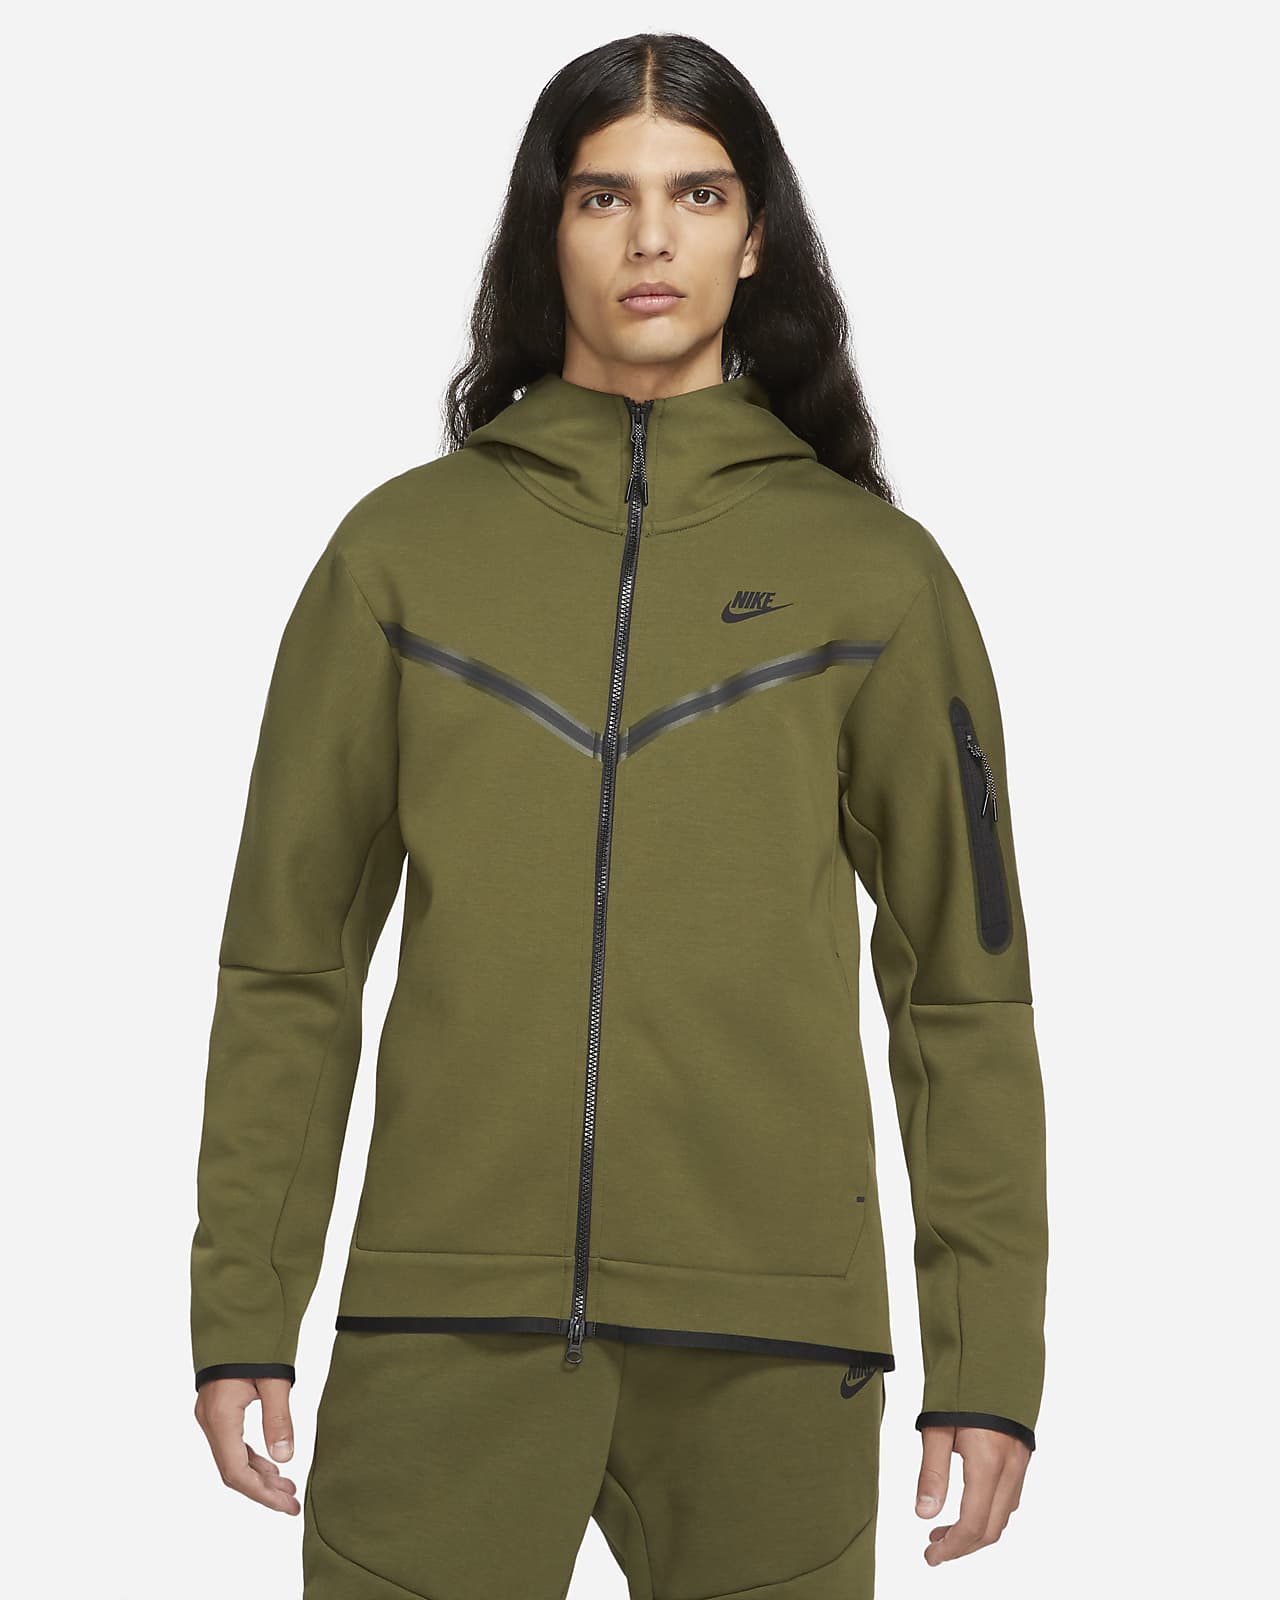 Huvtröja Nike Sportswear Tech Fleece med dragkedja i fullängd för män